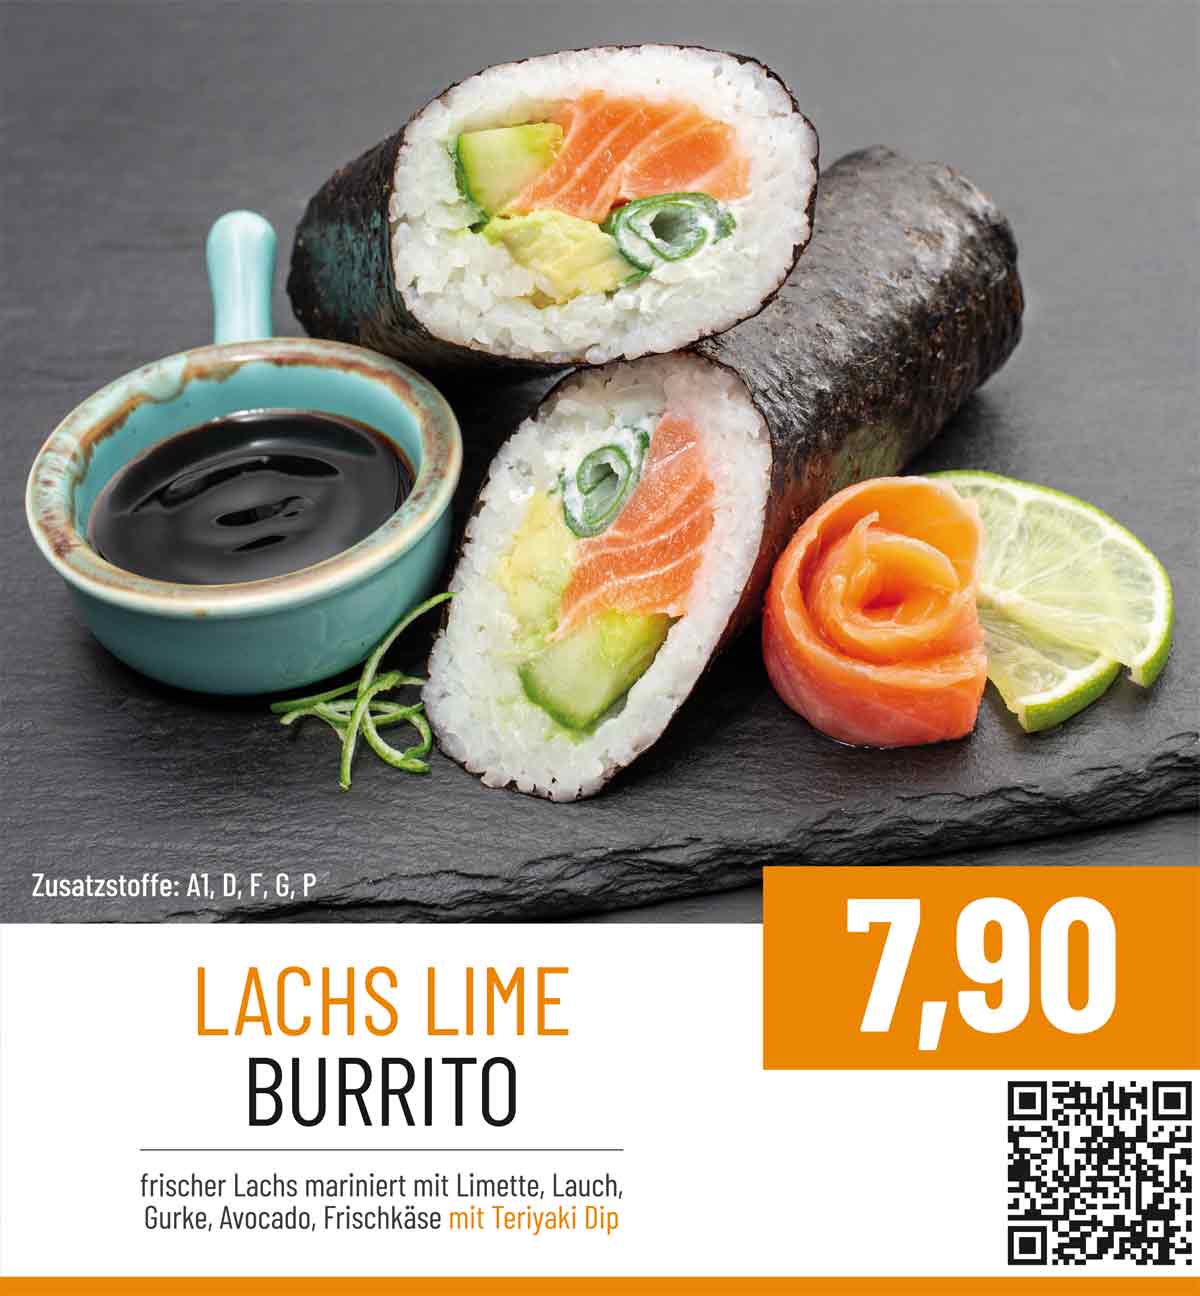 SUSHIdeluxe Limited - Lachs Lime Burrito mit frischem Lachs mariniert mit Limette, Lauch, Gurka, Avocado, Frischkäse mit Teriyaki Dip